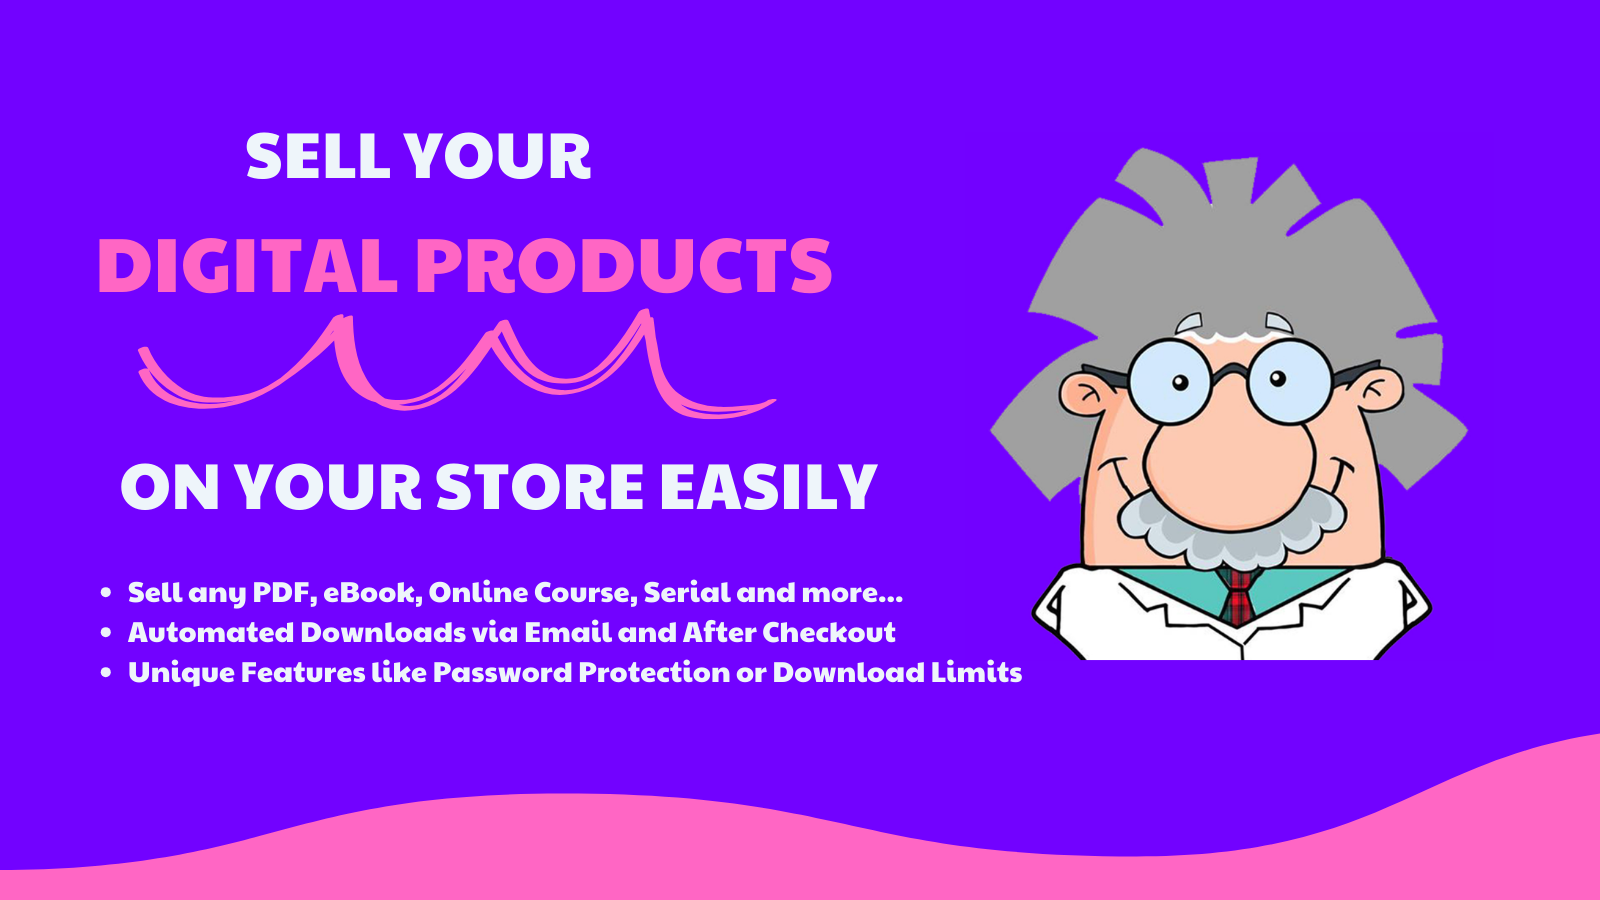 Vende tus productos digitales en tu tienda fácilmente